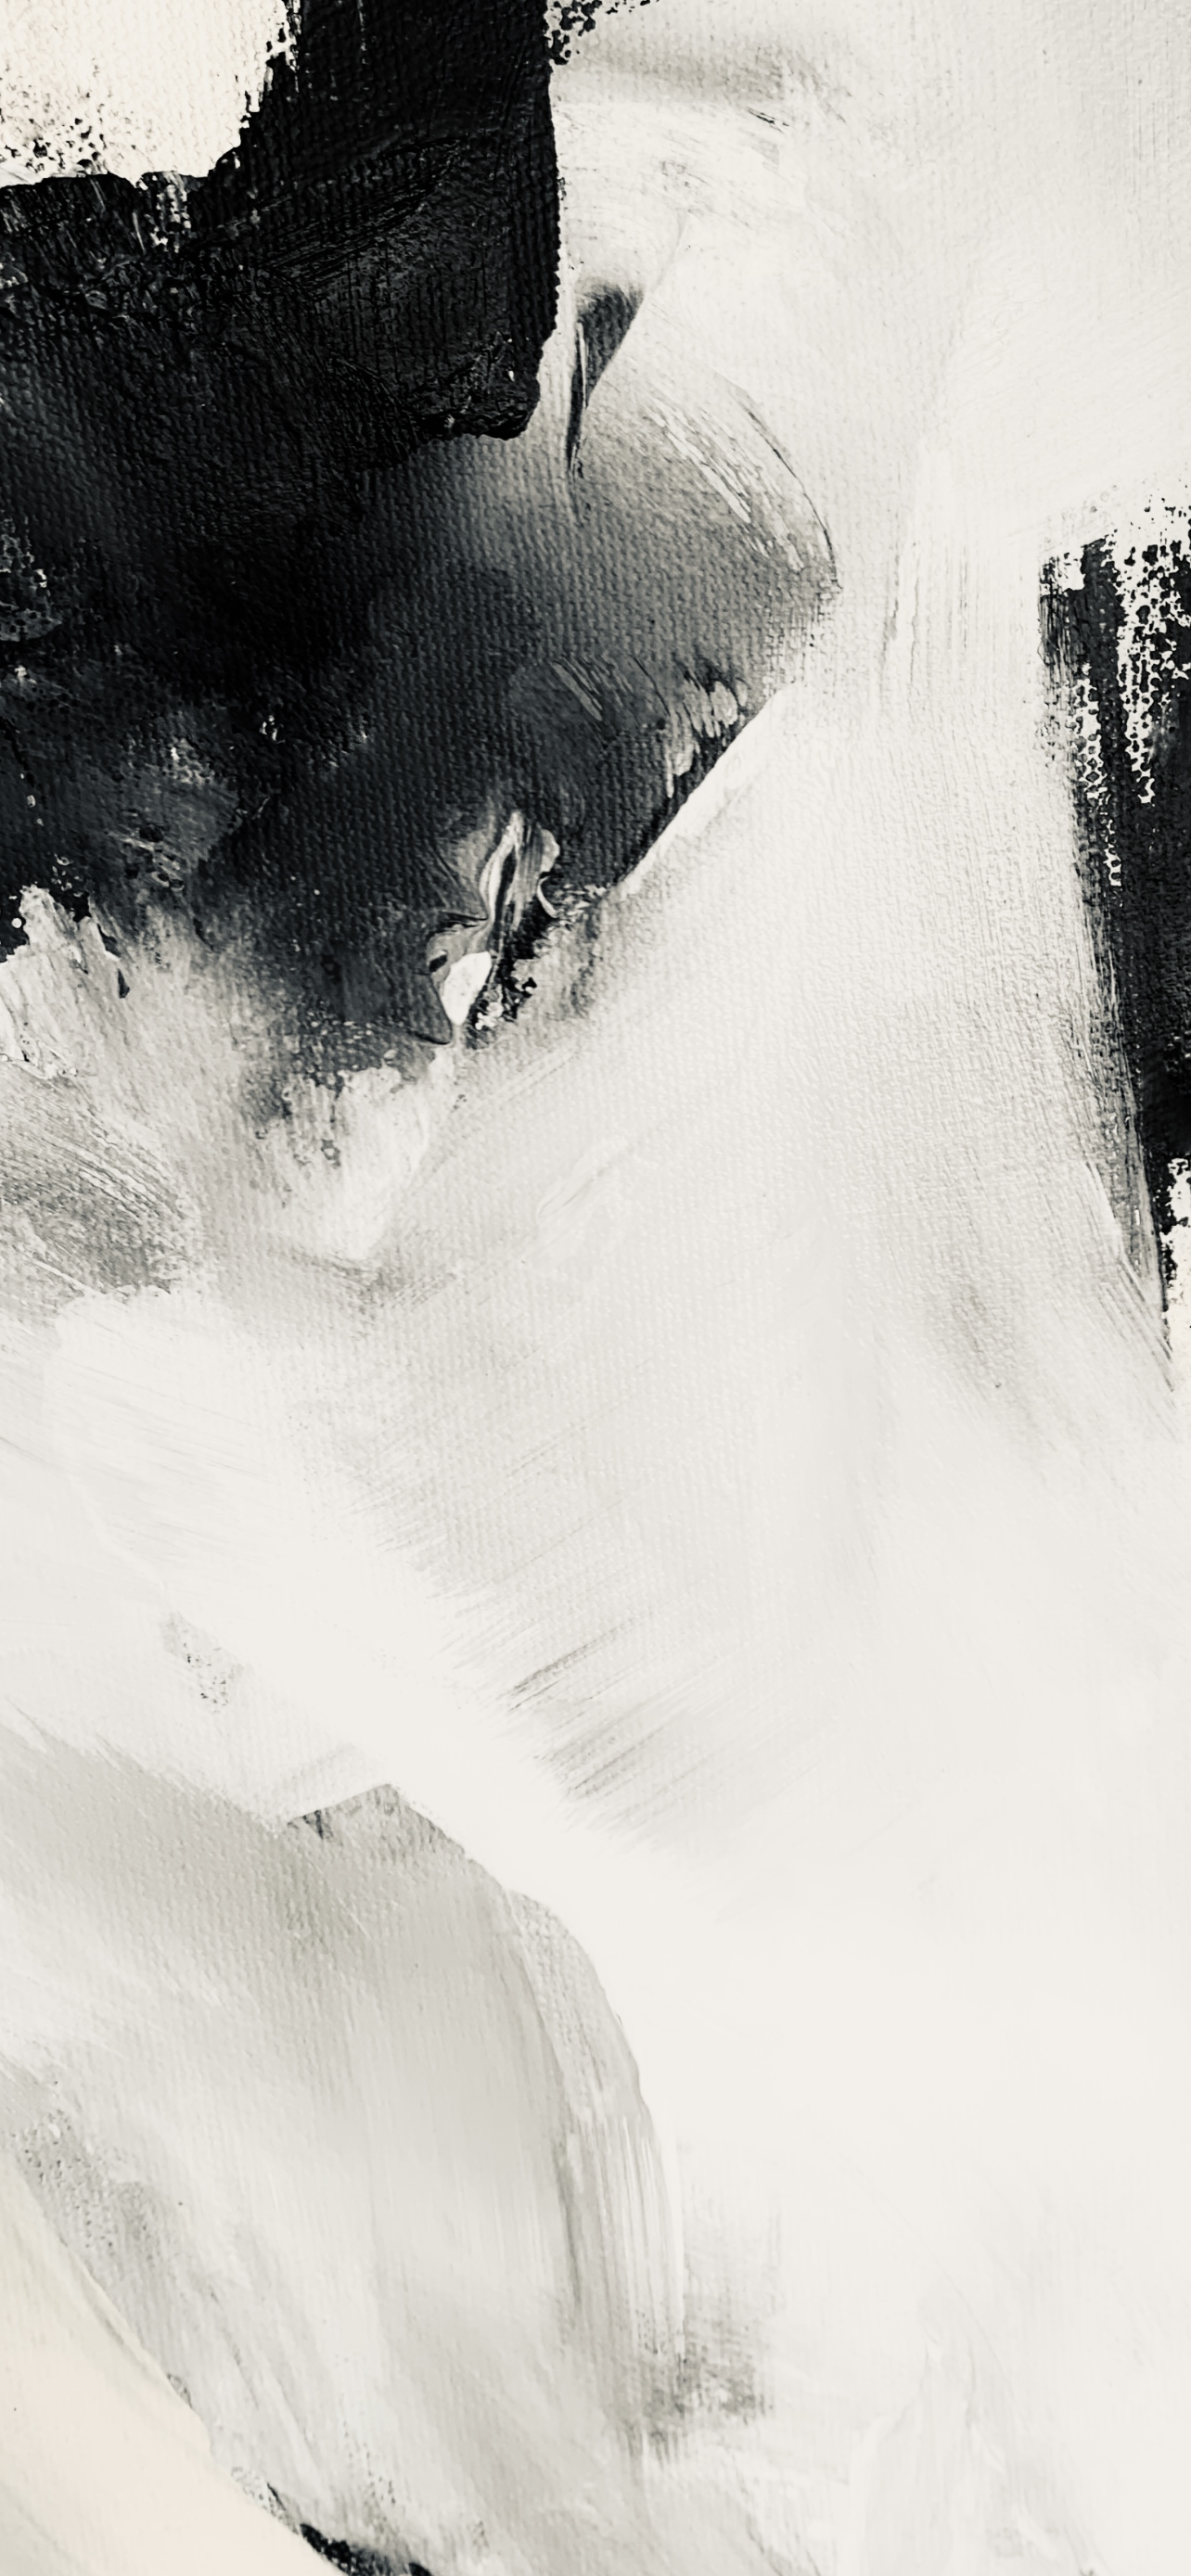 Monochrome abstract no.2